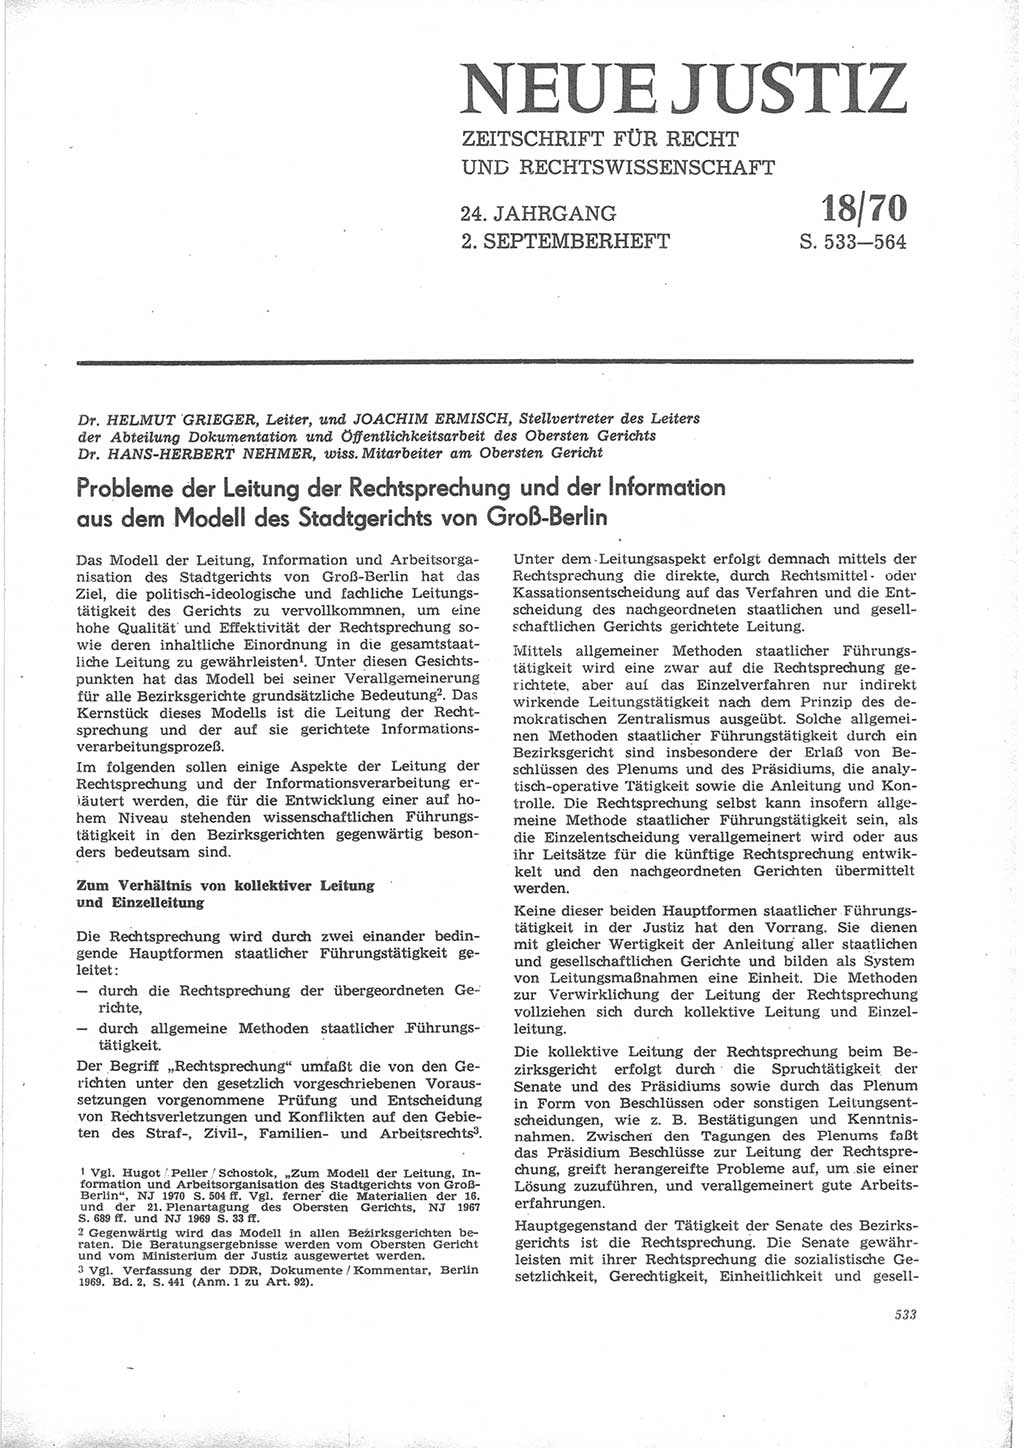 Neue Justiz (NJ), Zeitschrift für Recht und Rechtswissenschaft [Deutsche Demokratische Republik (DDR)], 24. Jahrgang 1970, Seite 533 (NJ DDR 1970, S. 533)